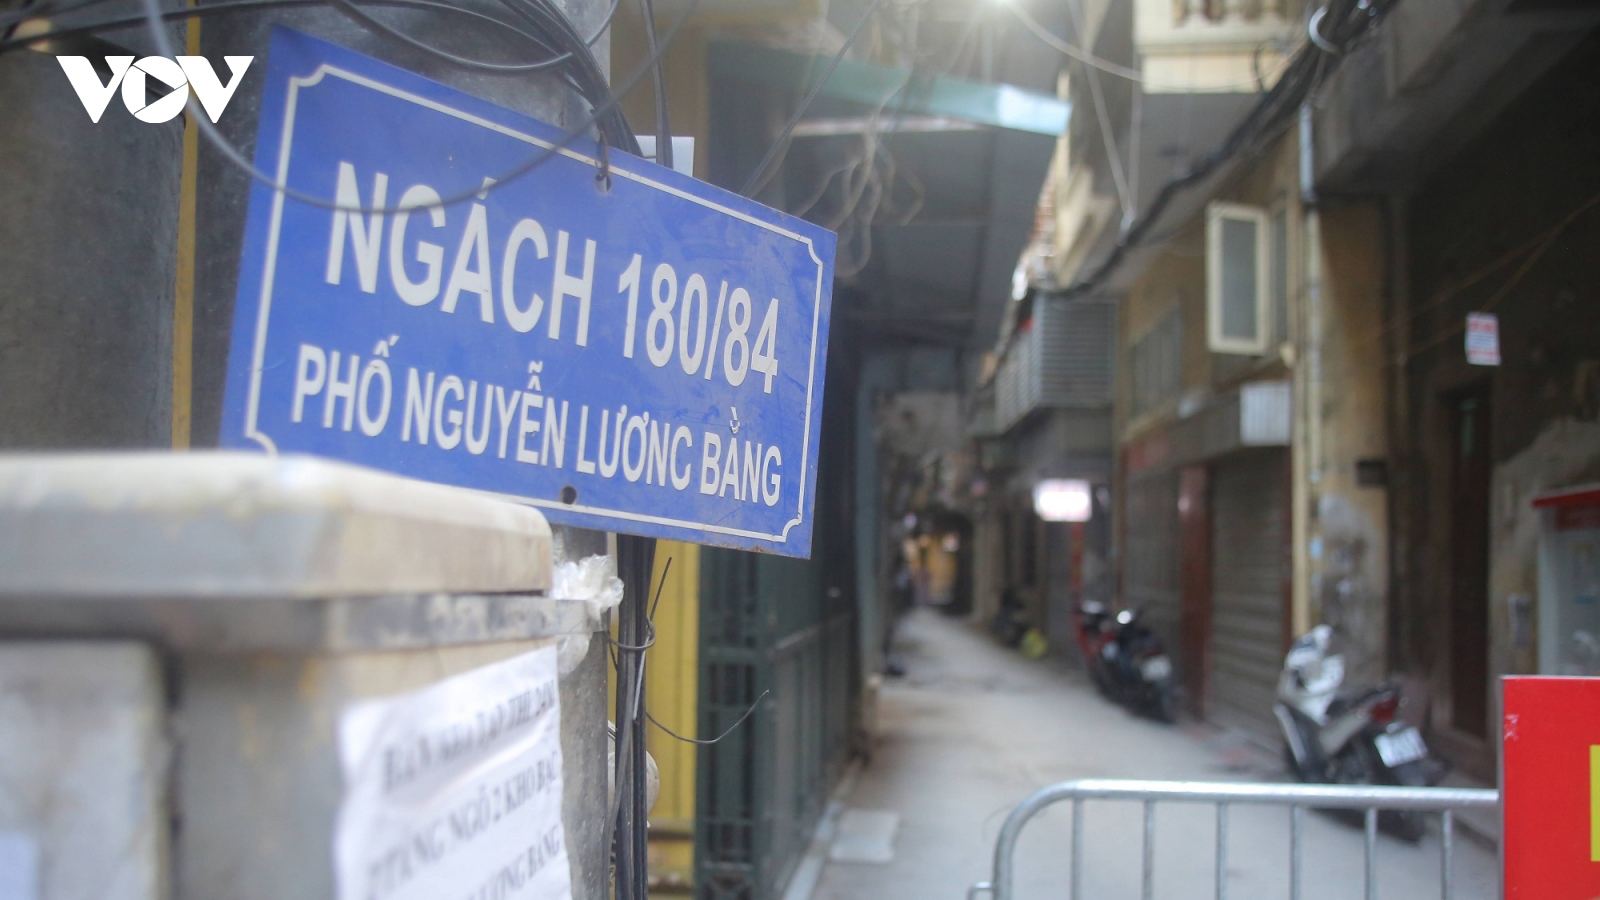 Phong tỏa ngách 180/84 phố Nguyễn Lương Bằng, F0 được đưa đi cách ly ngay trong đêm